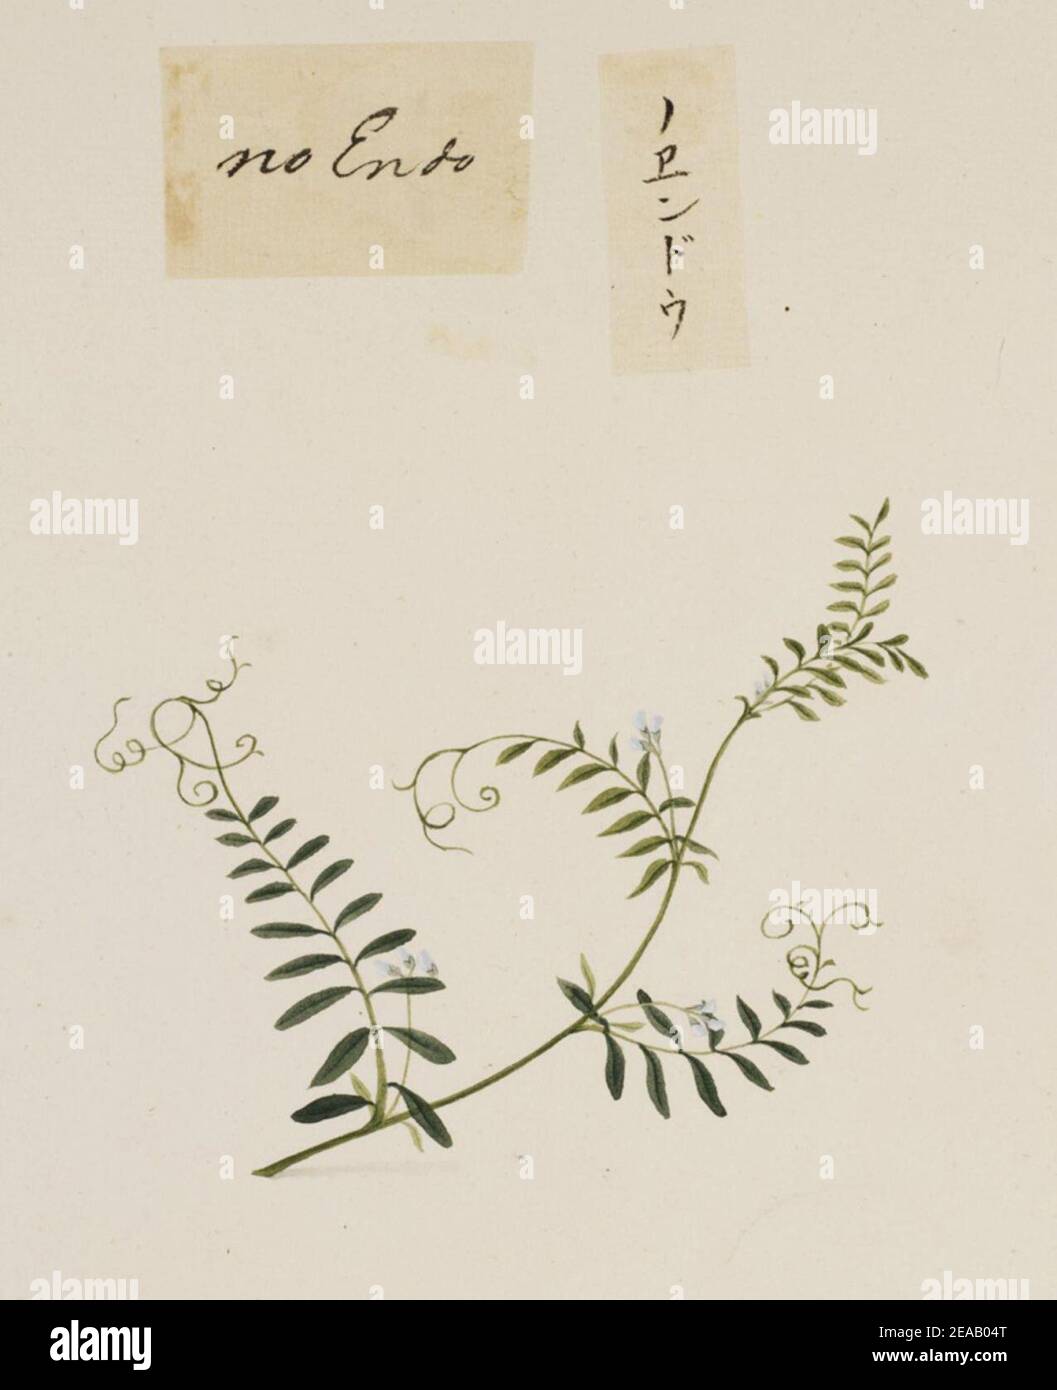 .668 - Vicia angustifolia - Kawahara Keiga - 1823 - 1829 - pencil drawing - water colour. Stock Photo